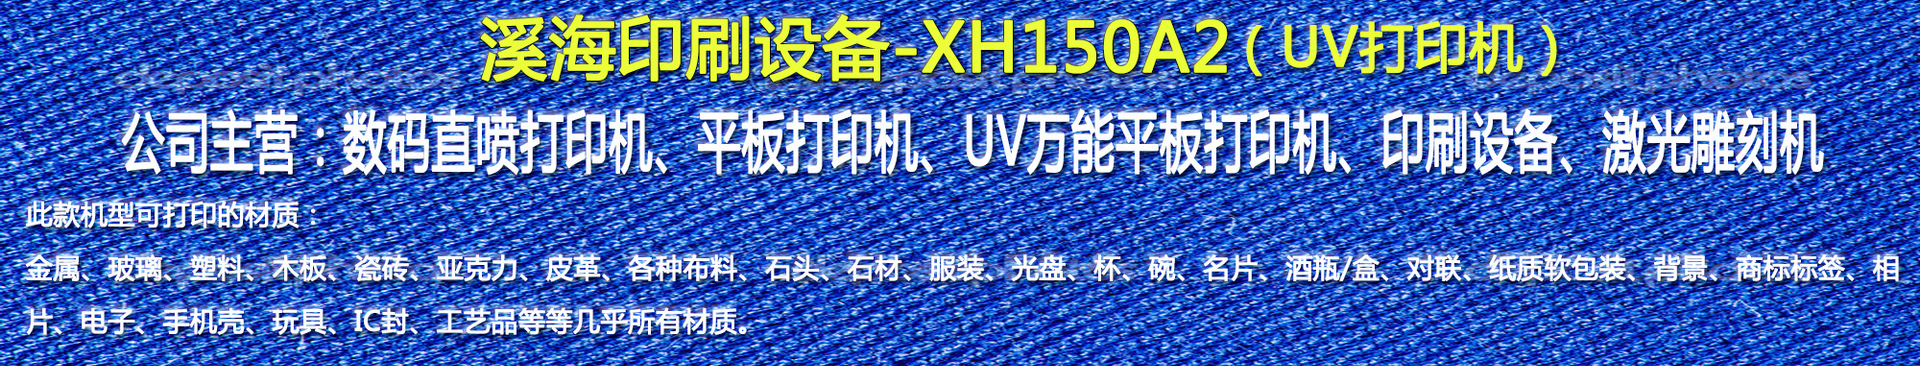 爱普生1390喷头uv打印机 影像级微信手机照片六色八色喷墨彩印机示例图1